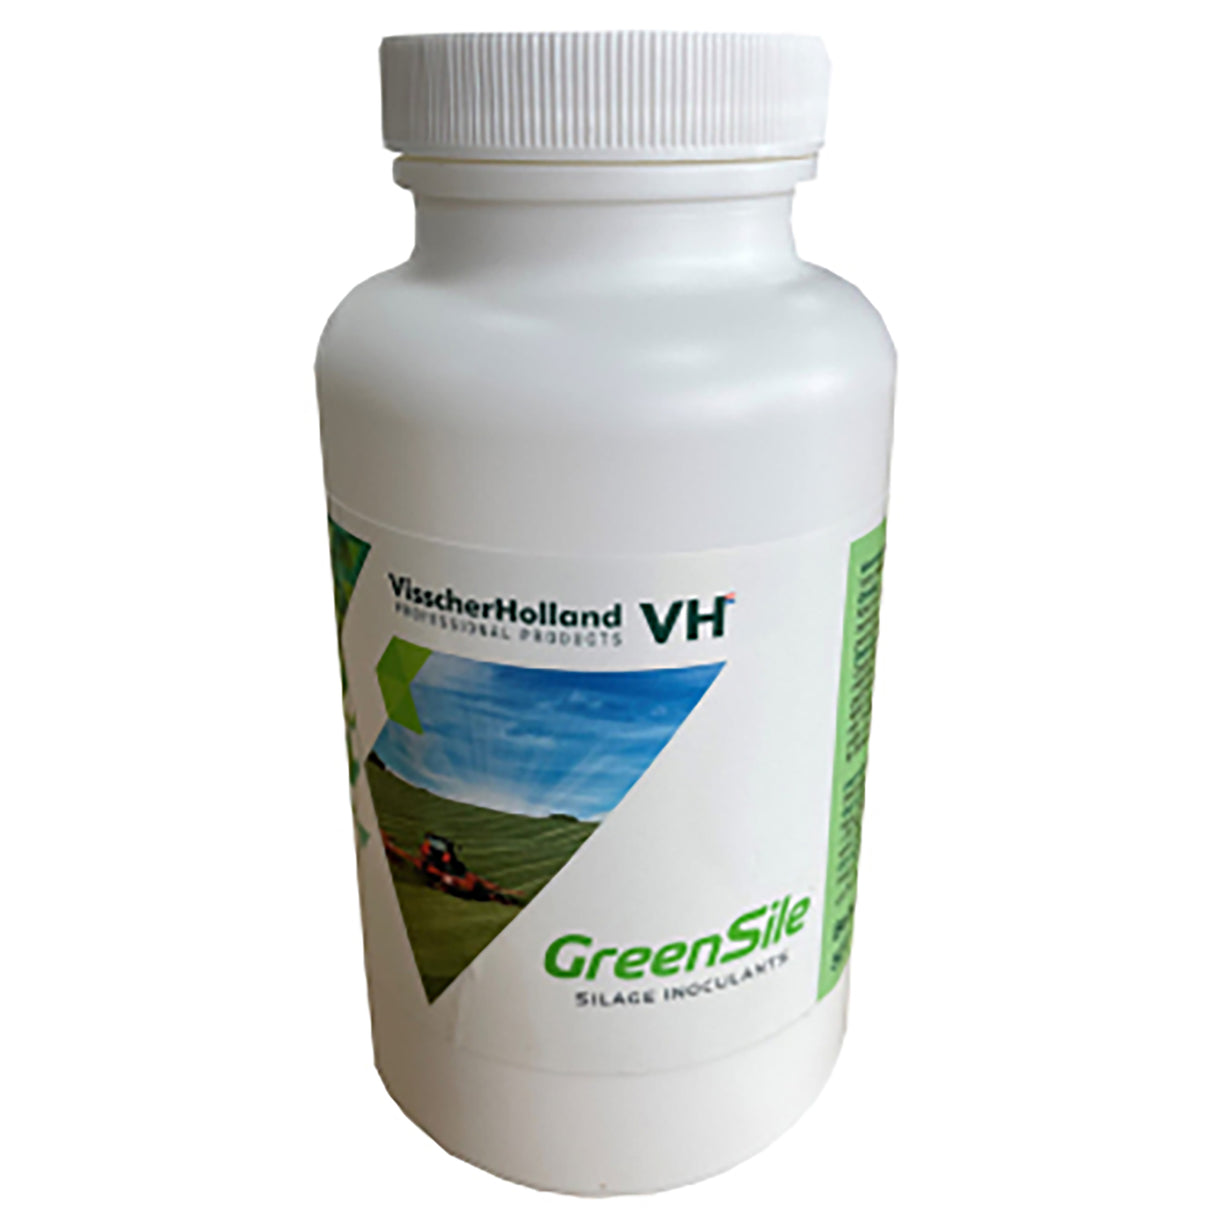 GreenSile Plus 150 grams